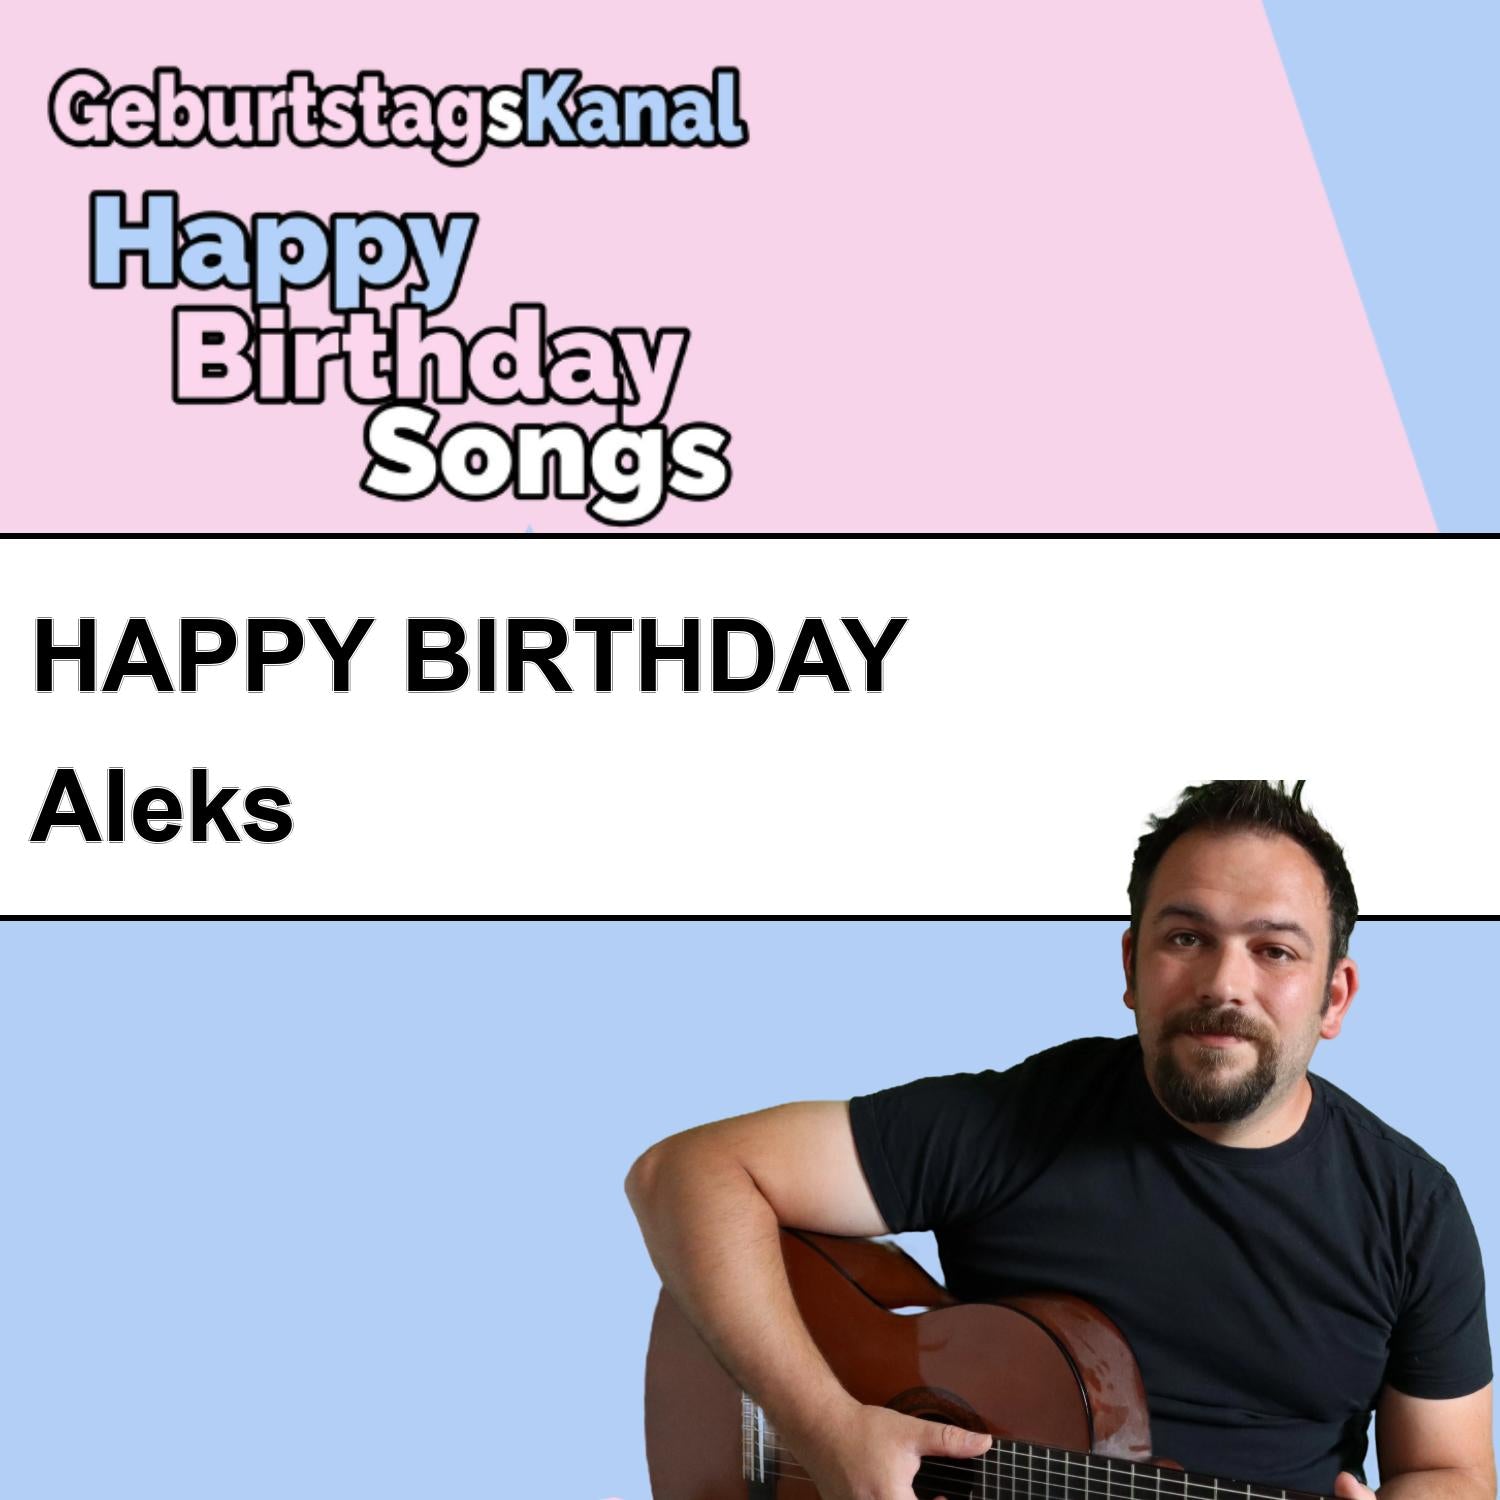 Produktbild Happy Birthday to you Aleks mit Wunschgrußbotschaft